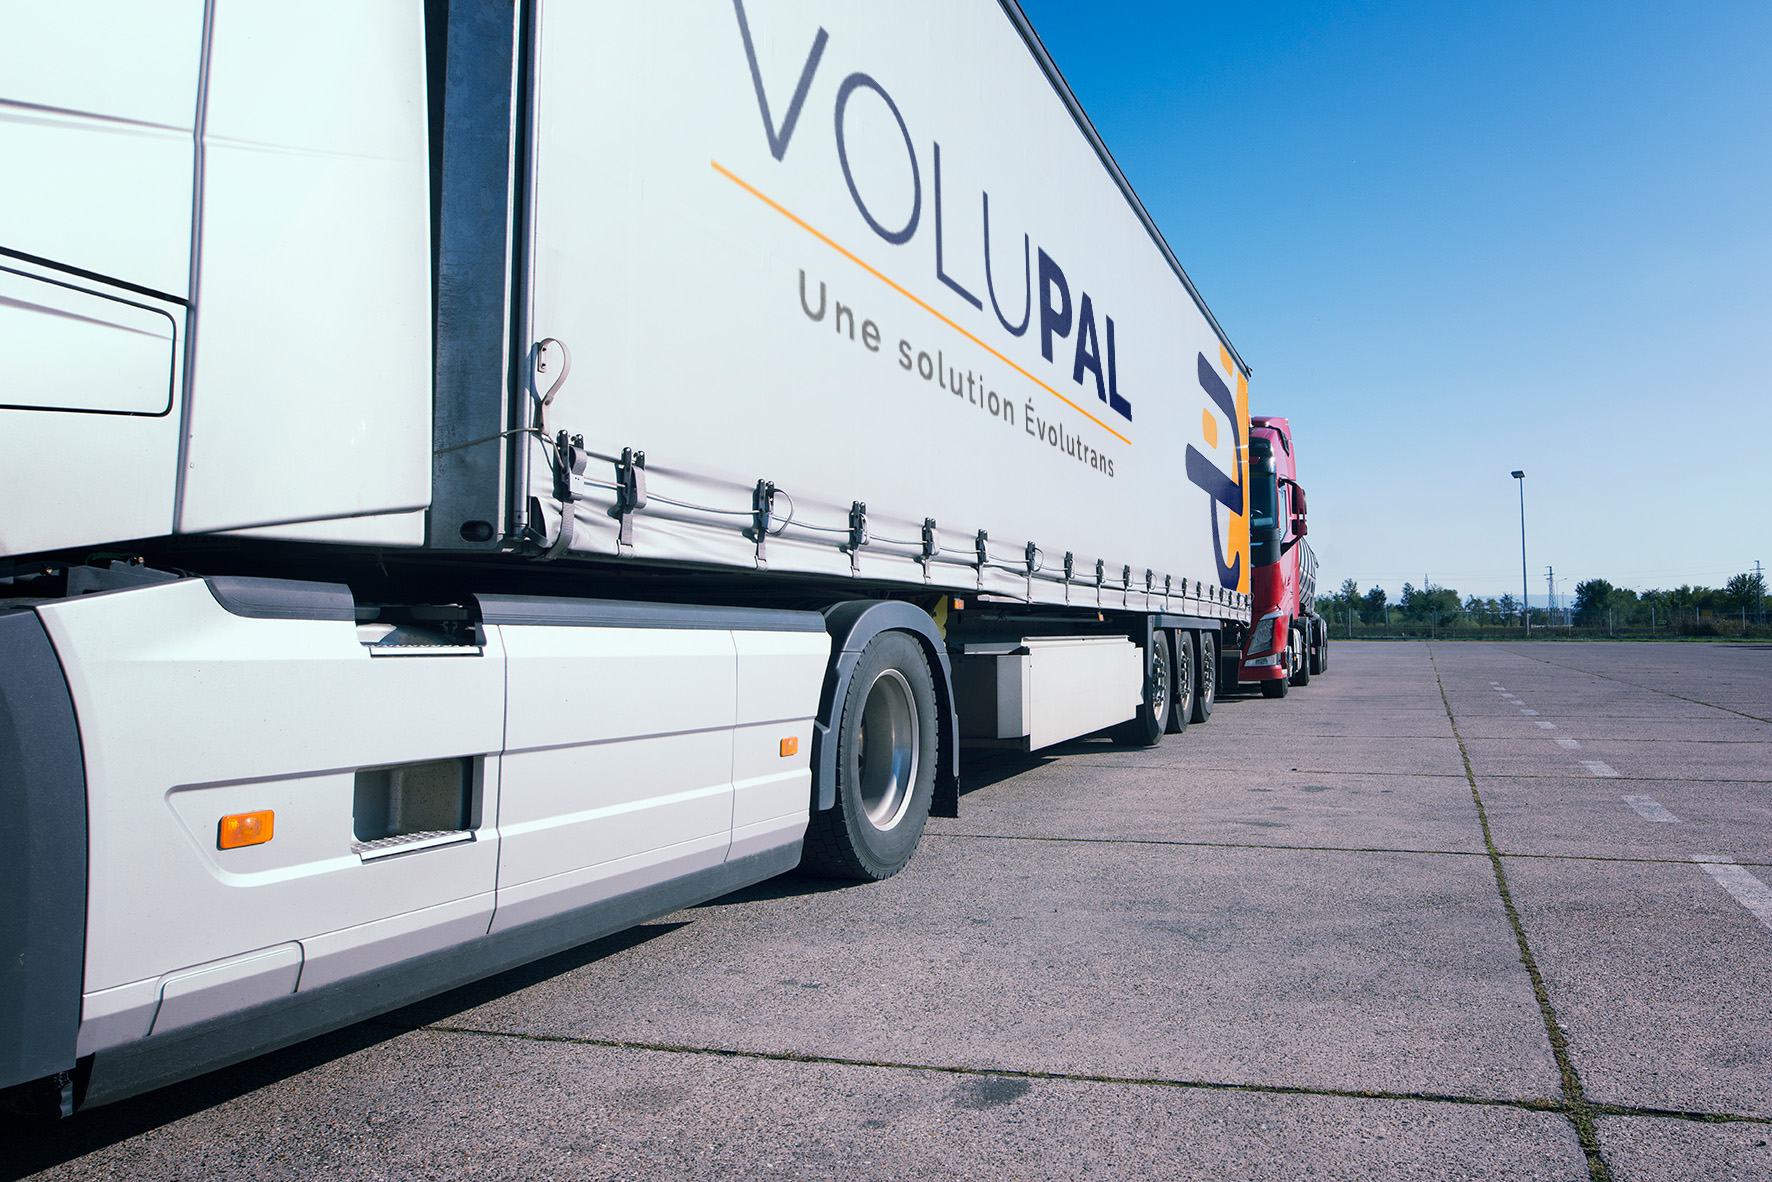 Volupal est un réseau de distribution de fret palettisé qui propose du transport de palettes en 24h à 72h en France.